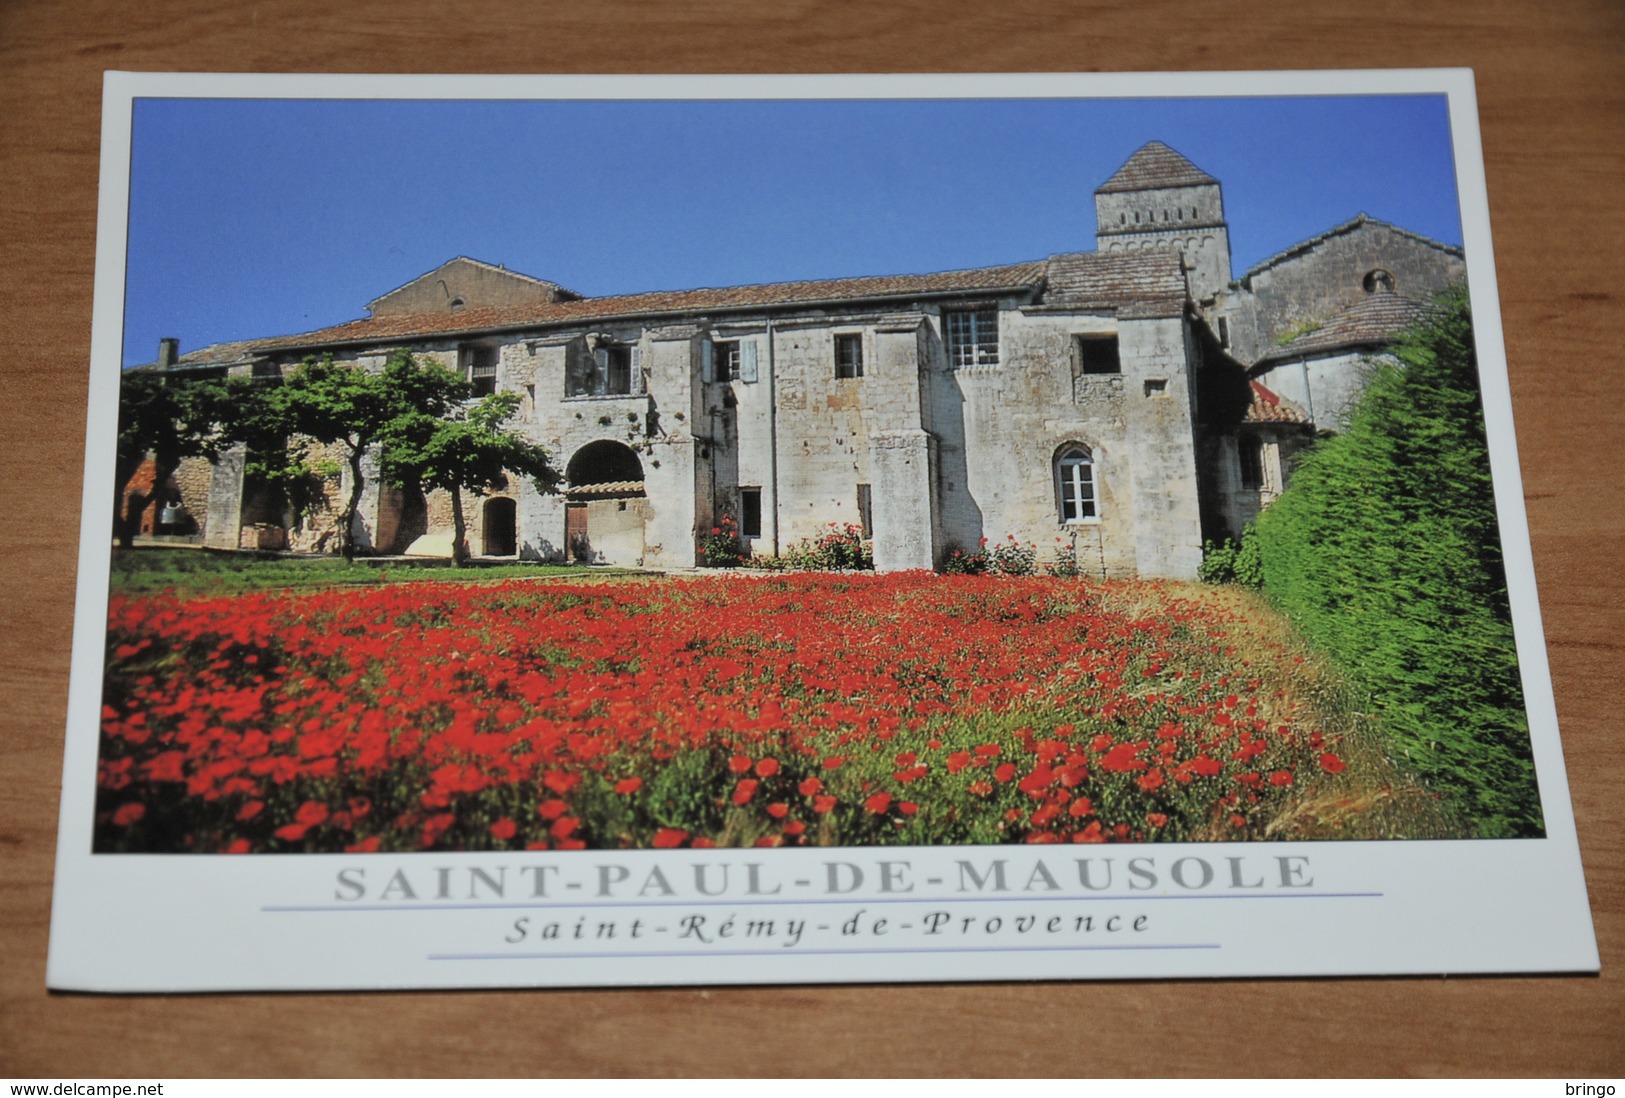 4617- Saint Remy De Provence, Saint Paul De Mausole - Saint-Remy-de-Provence